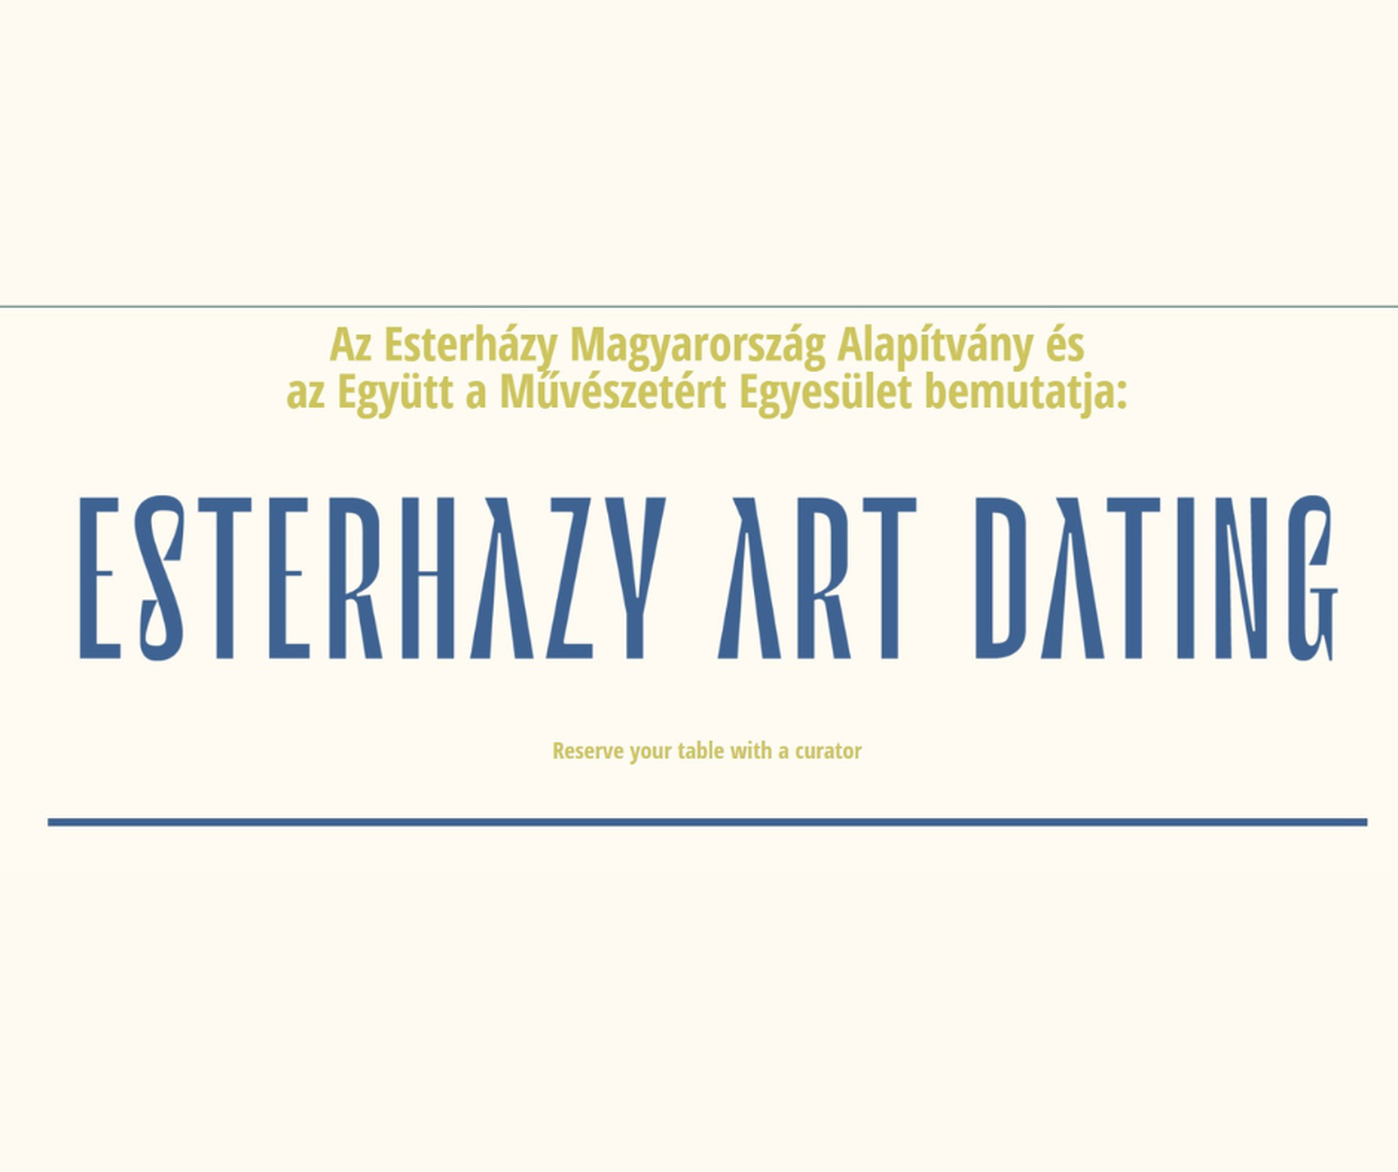 Elindult első Esterhazy Art Dating programunk